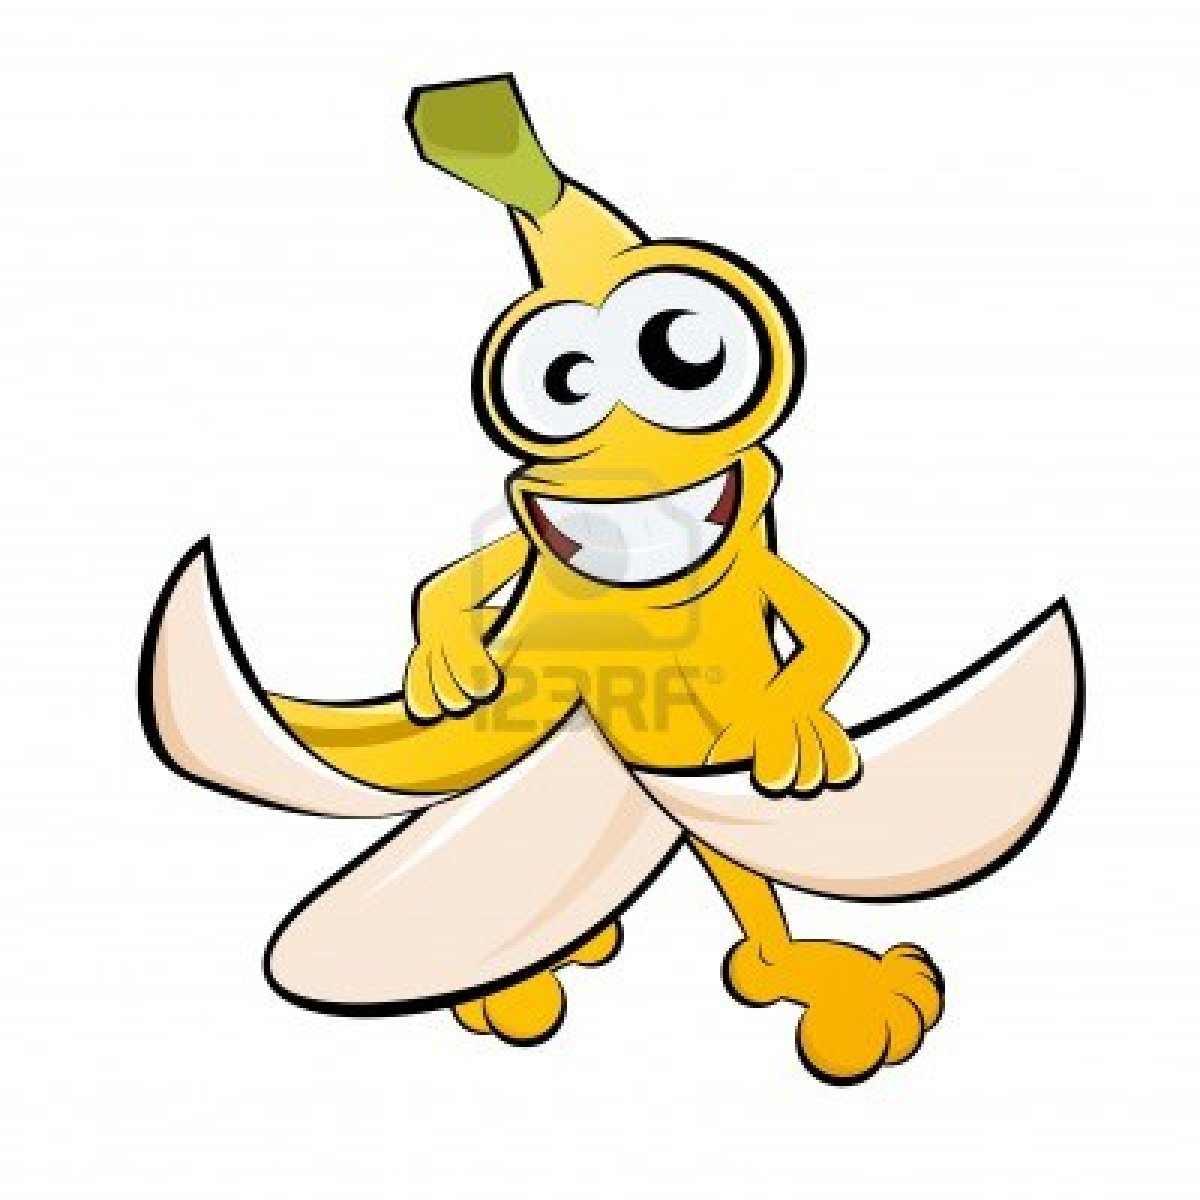 Banana Cartoon Images Funny Banana Cartoon